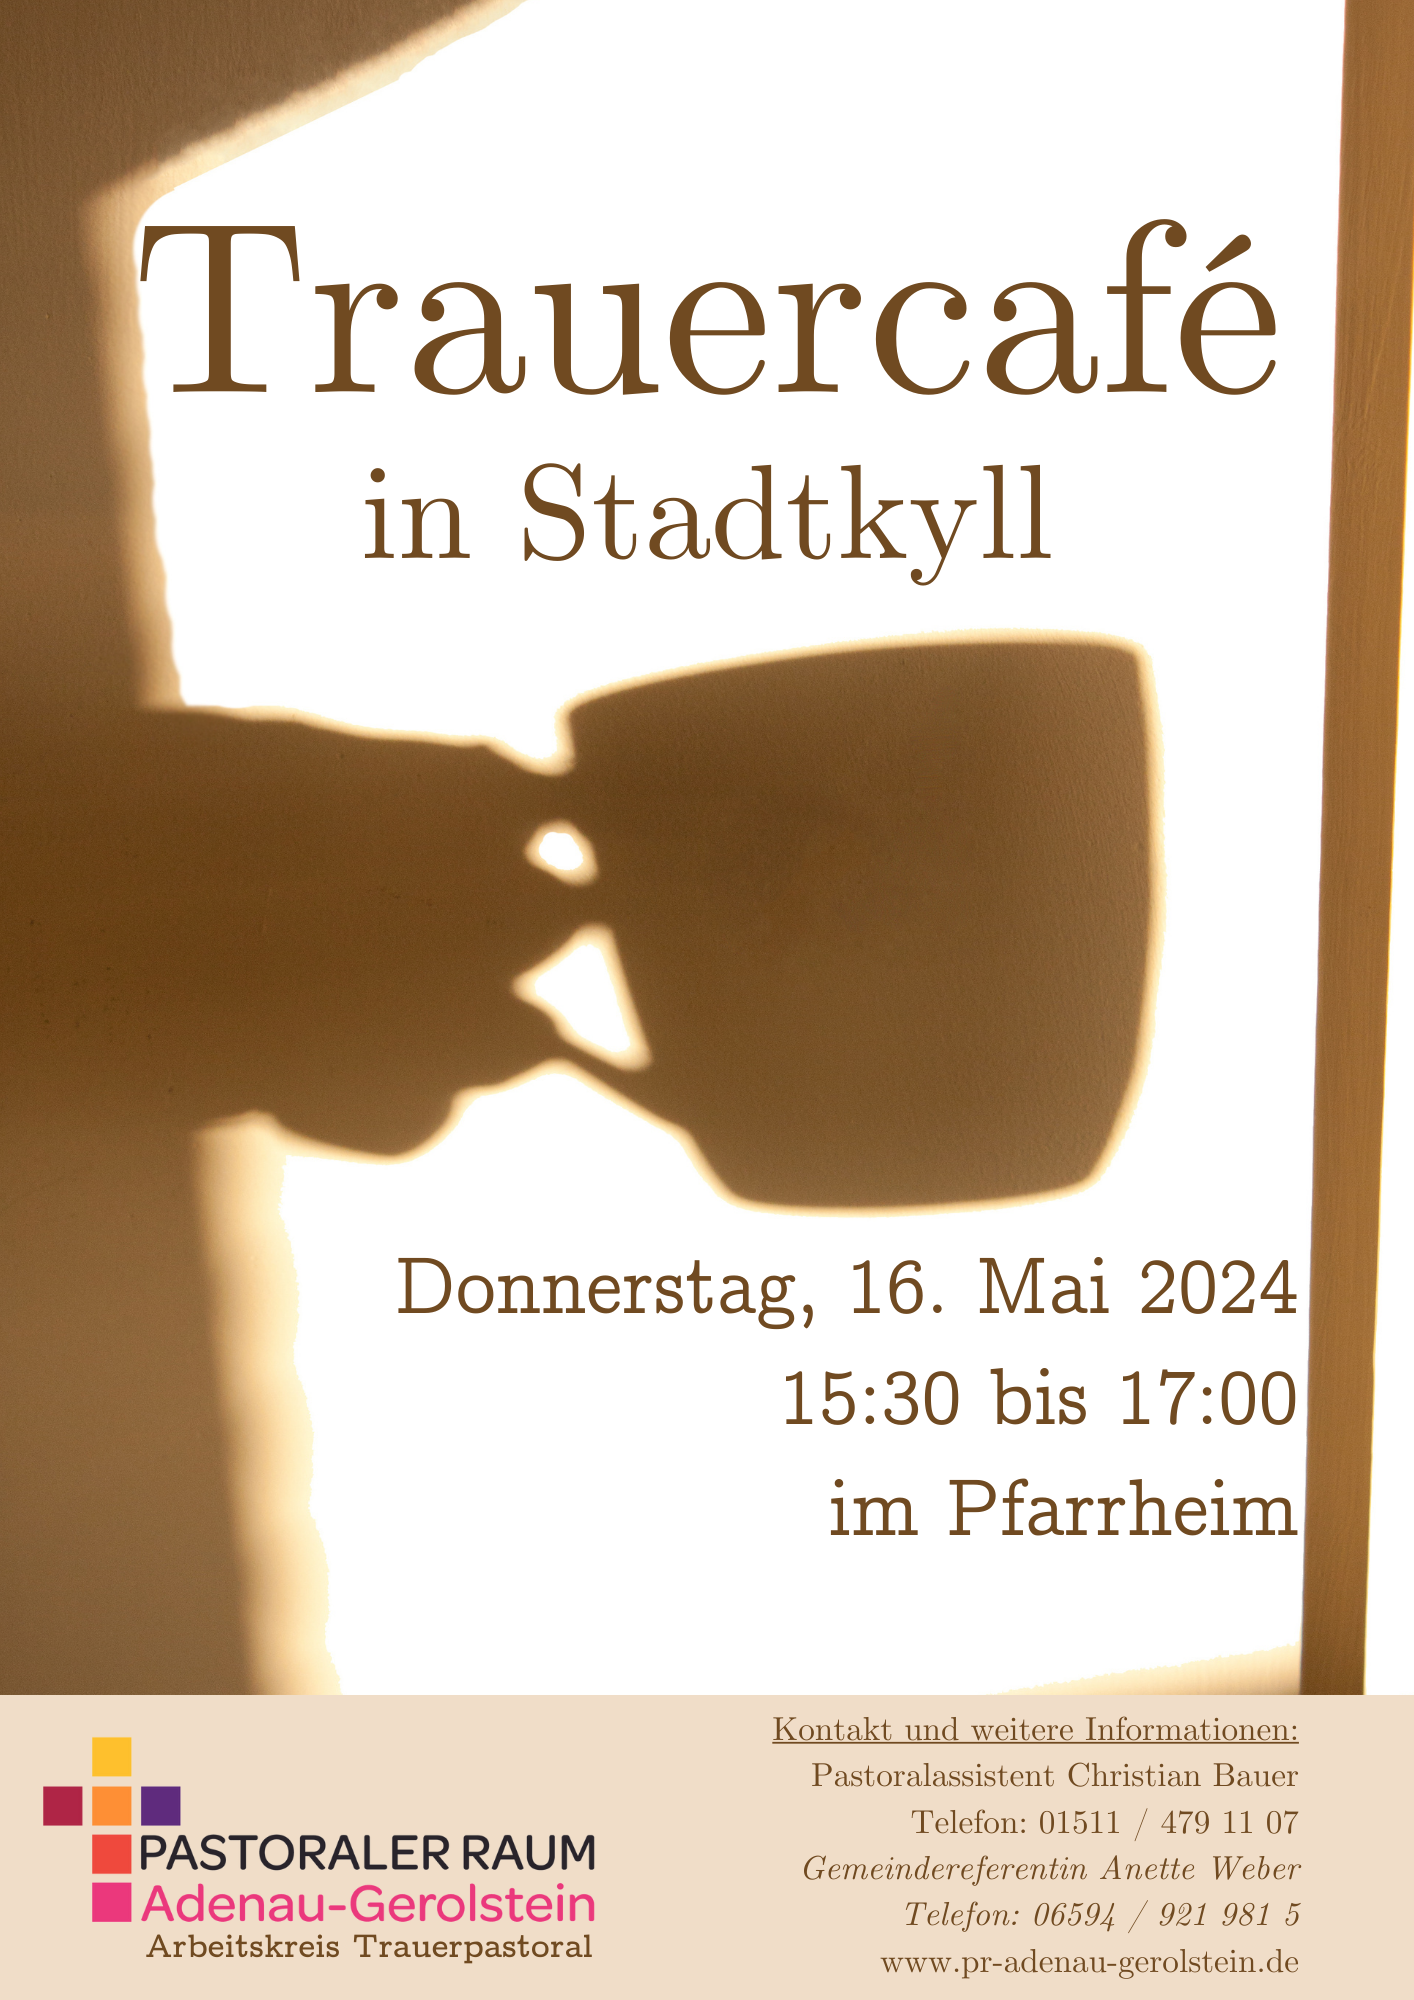 Plakat Trauercafe Stadtkyll